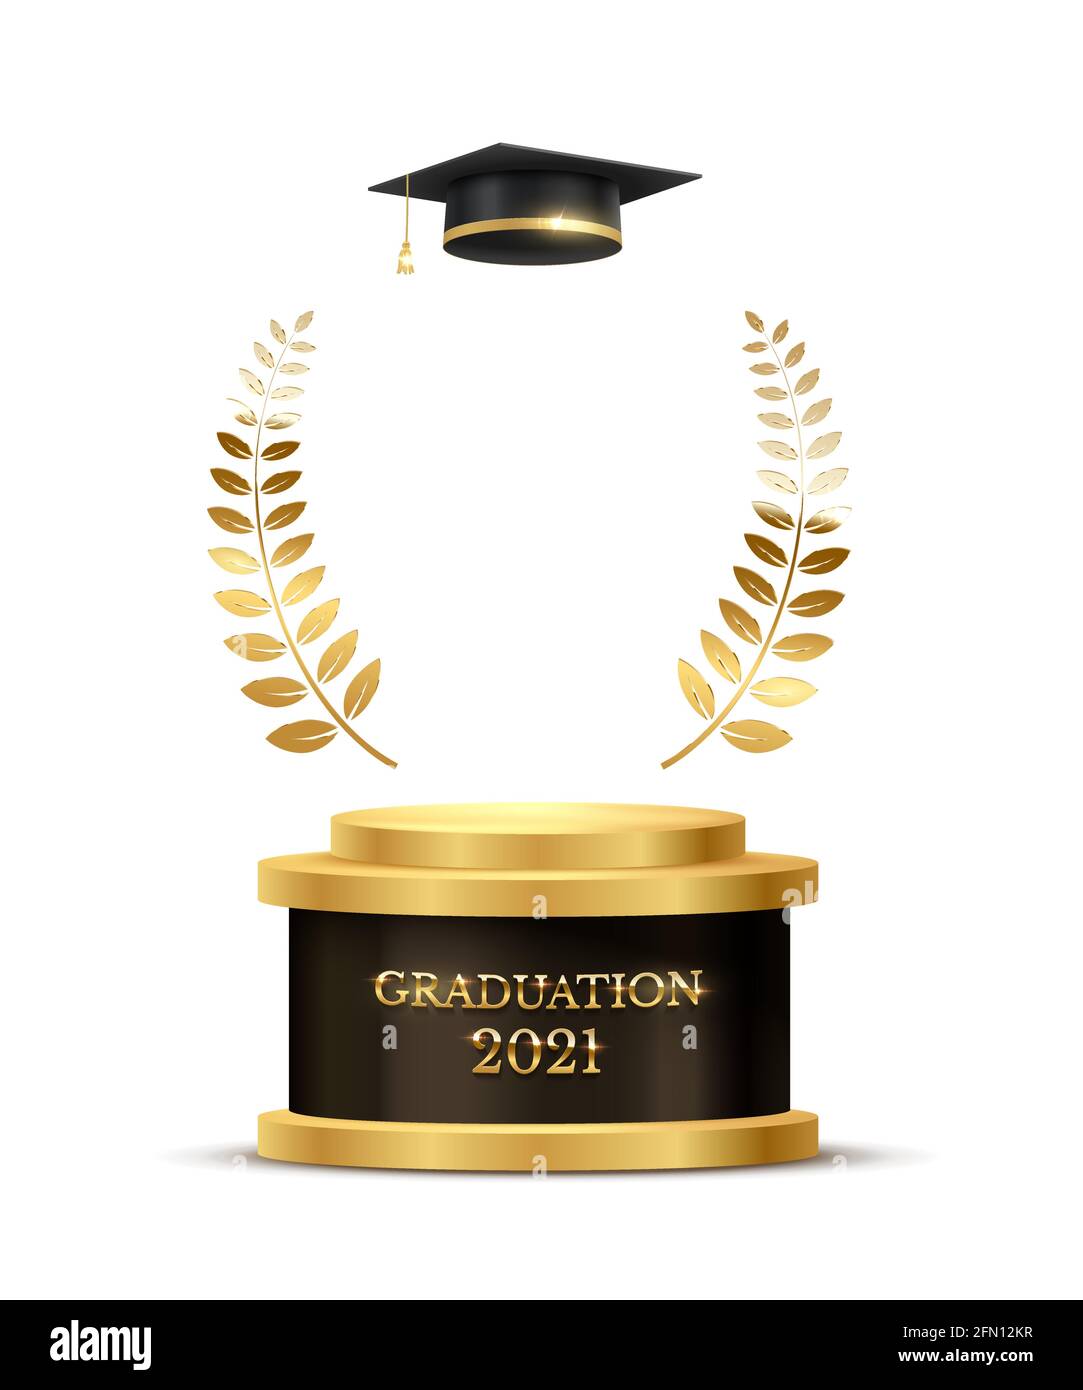 Banner zur Abschlussfeier 2021. Preiskonzept mit akademischem Hut, goldenem Podium und Lorbeerkranz unter glänzendem Glitzer auf dunklem Hintergrund Stock Vektor